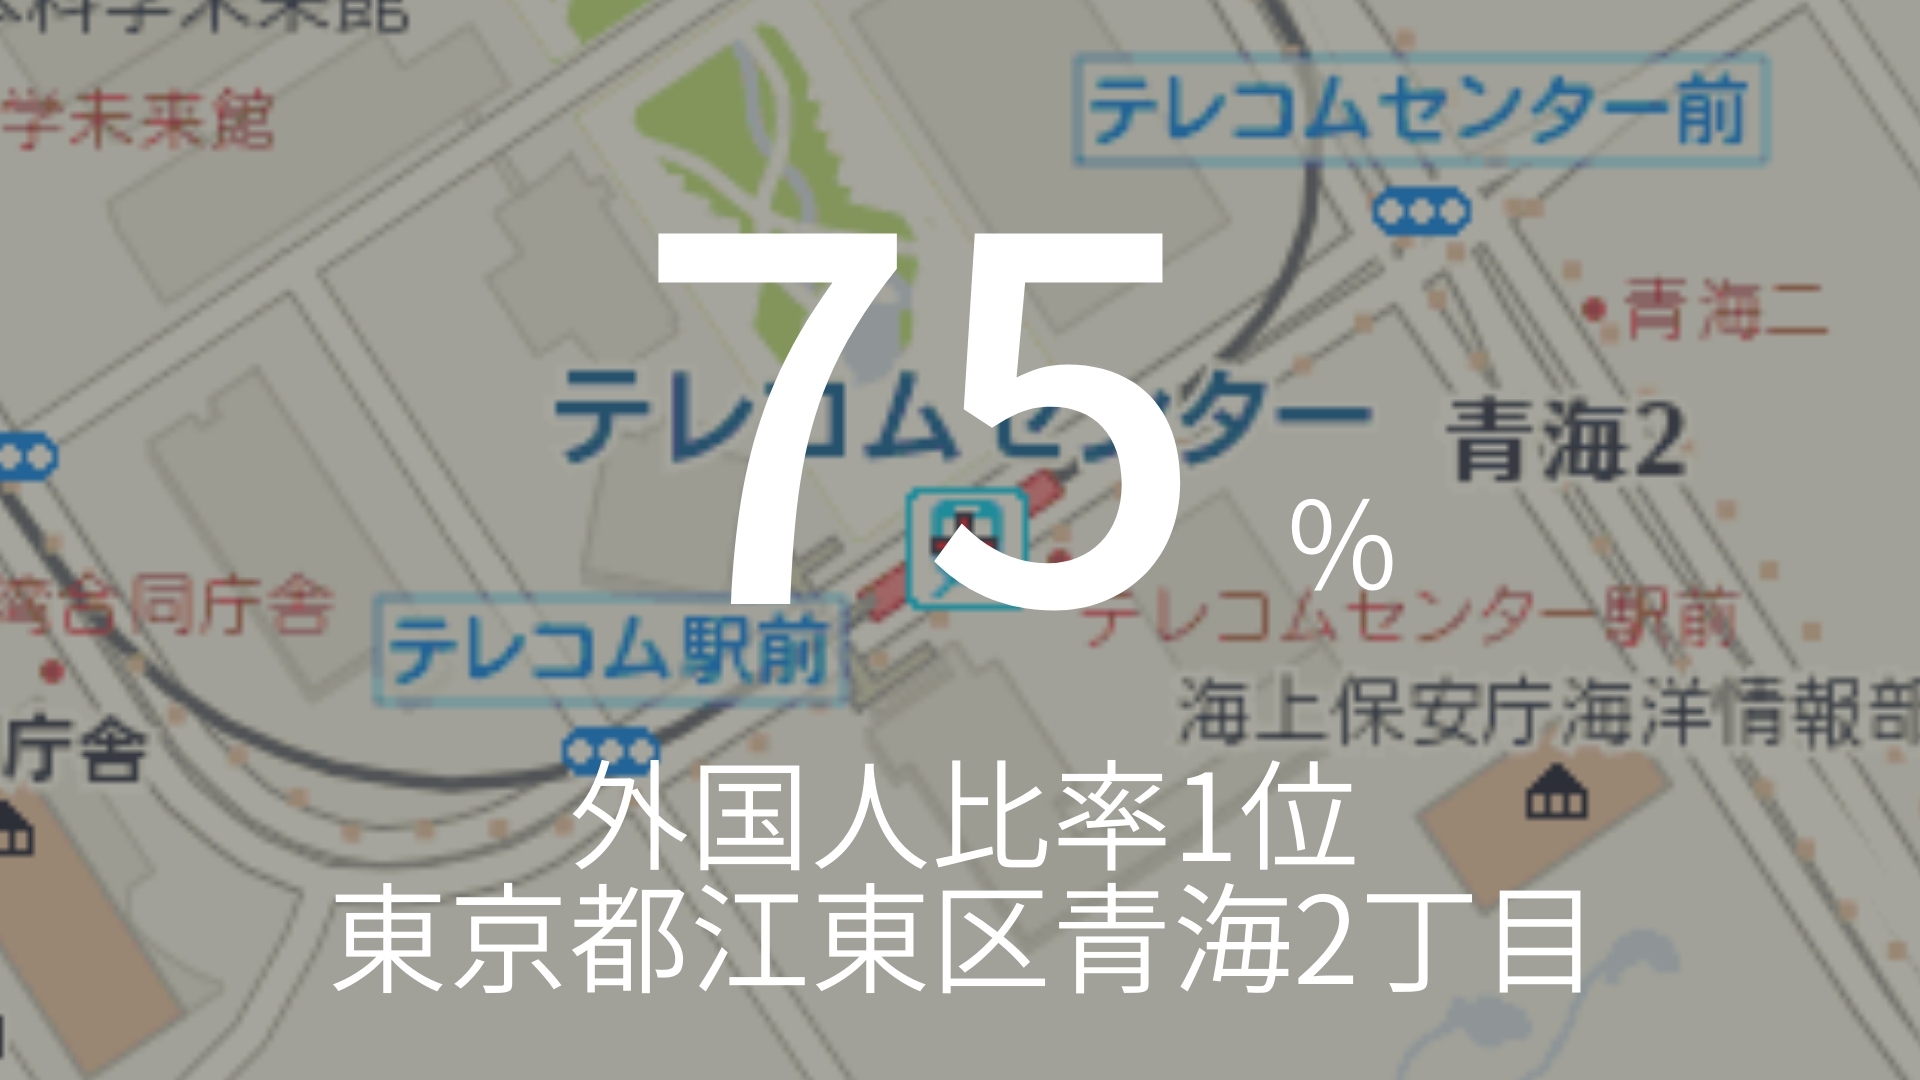 「75%」 >>> 外国人比率1位。東京都江東区青海2丁目。